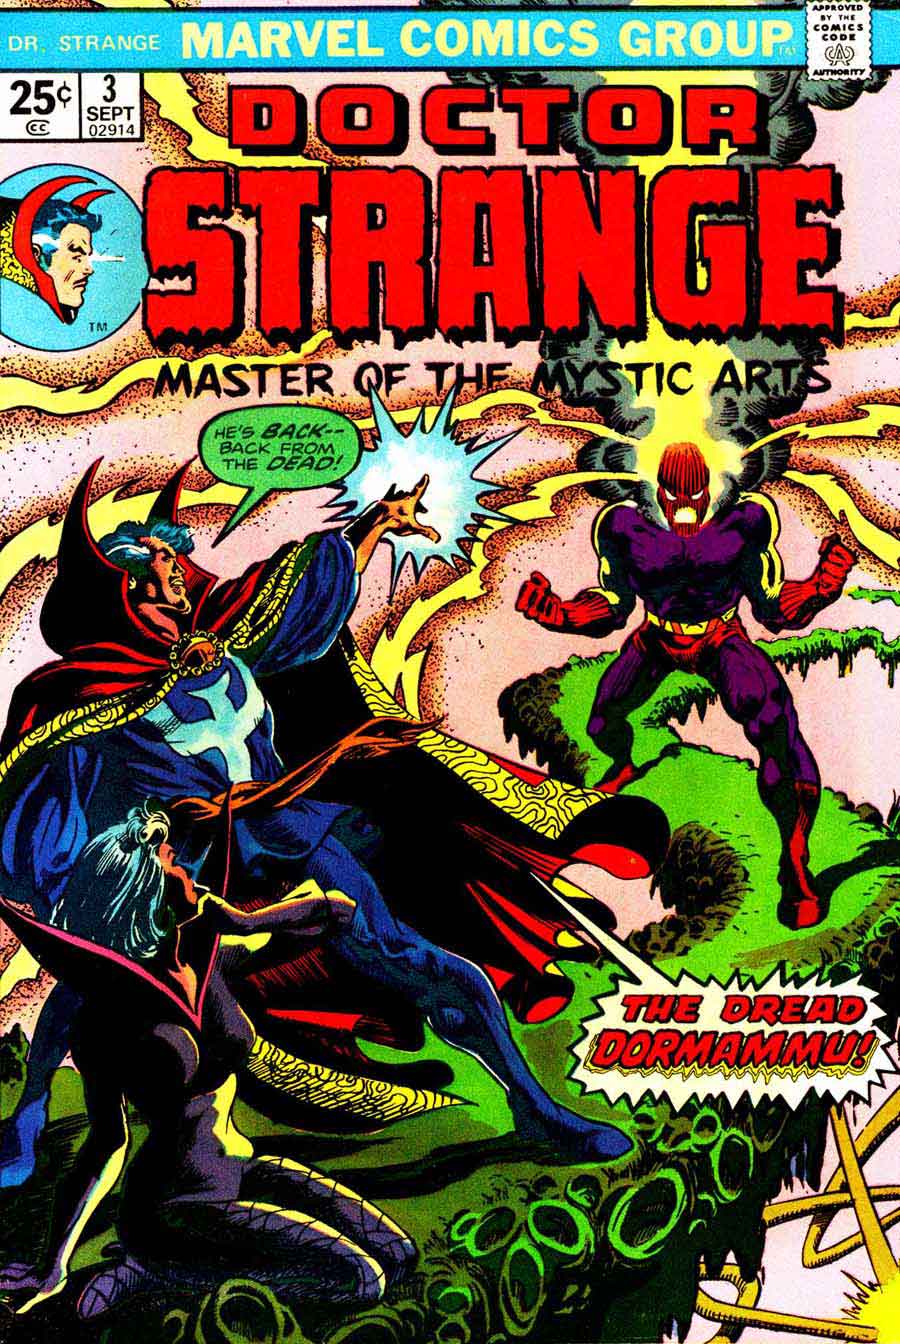 Frank Brunner  bronze age 1970s marvel comic book cover art - Doctor Strange v2 #3